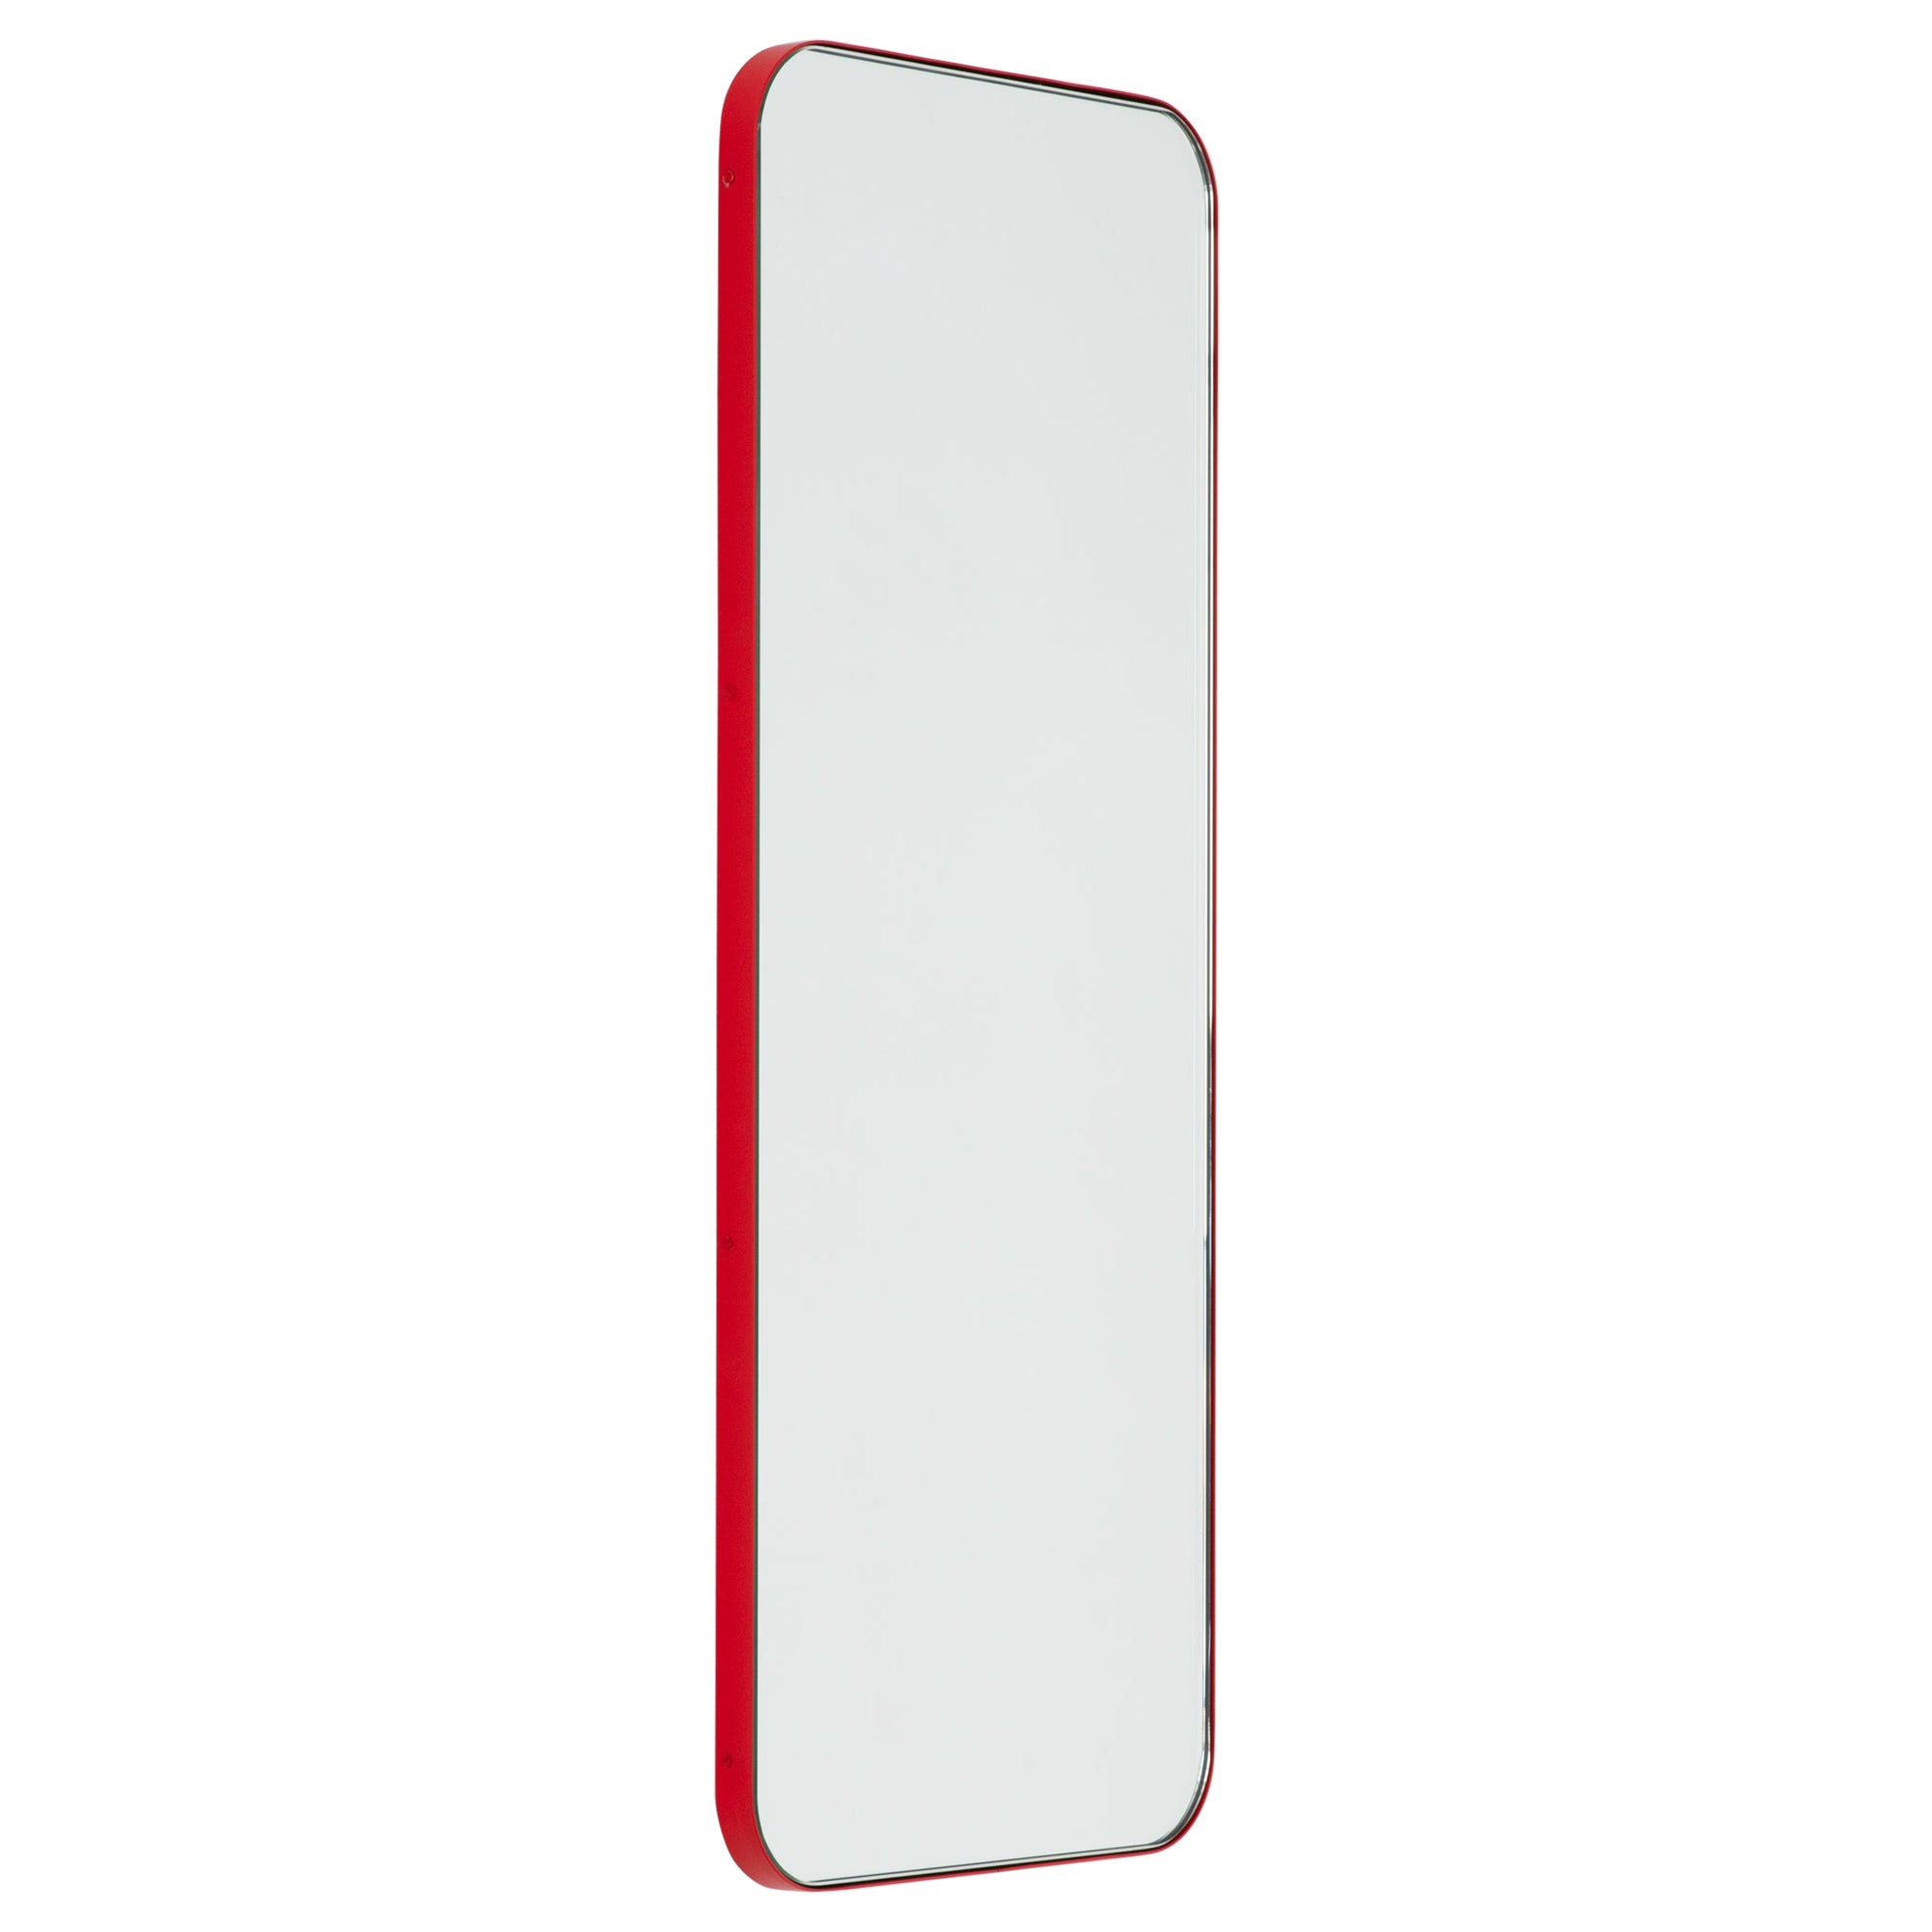 Quadris Rectangular Modern Spiegel mit rotem Rahmen, XL im Angebot